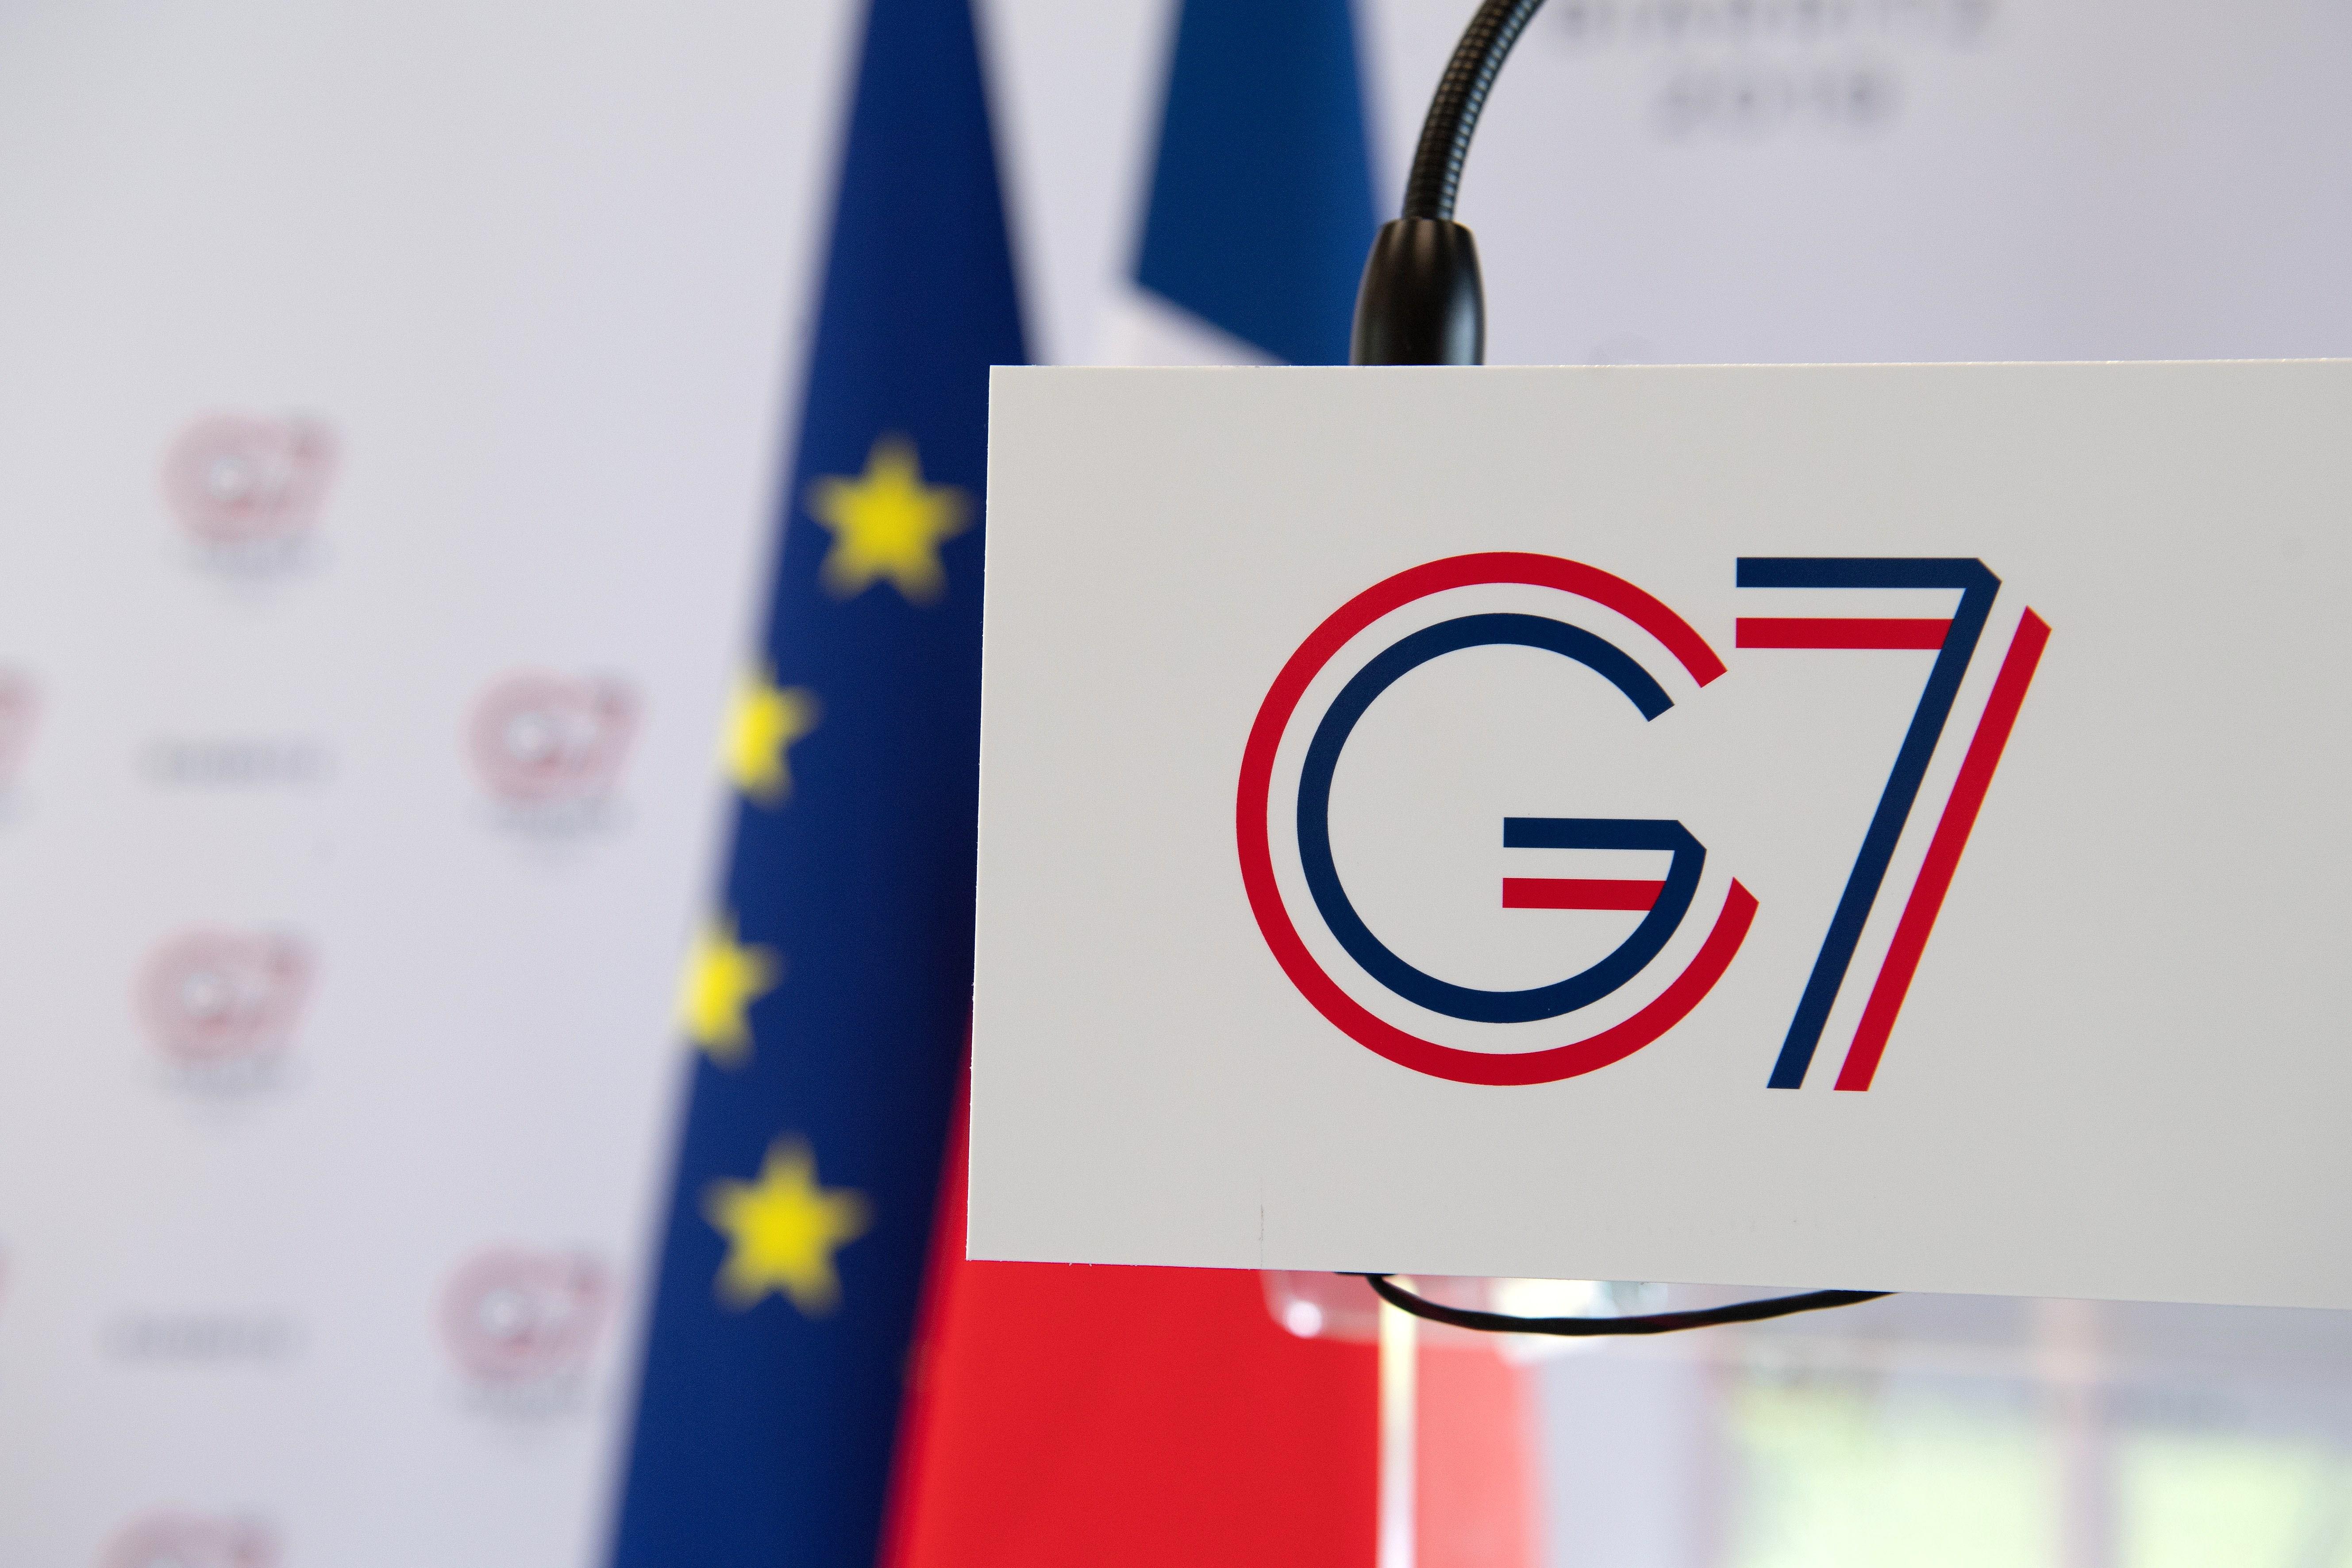 Compte enrere per a la cimera (i la contracimera) del G7 a Biarritz